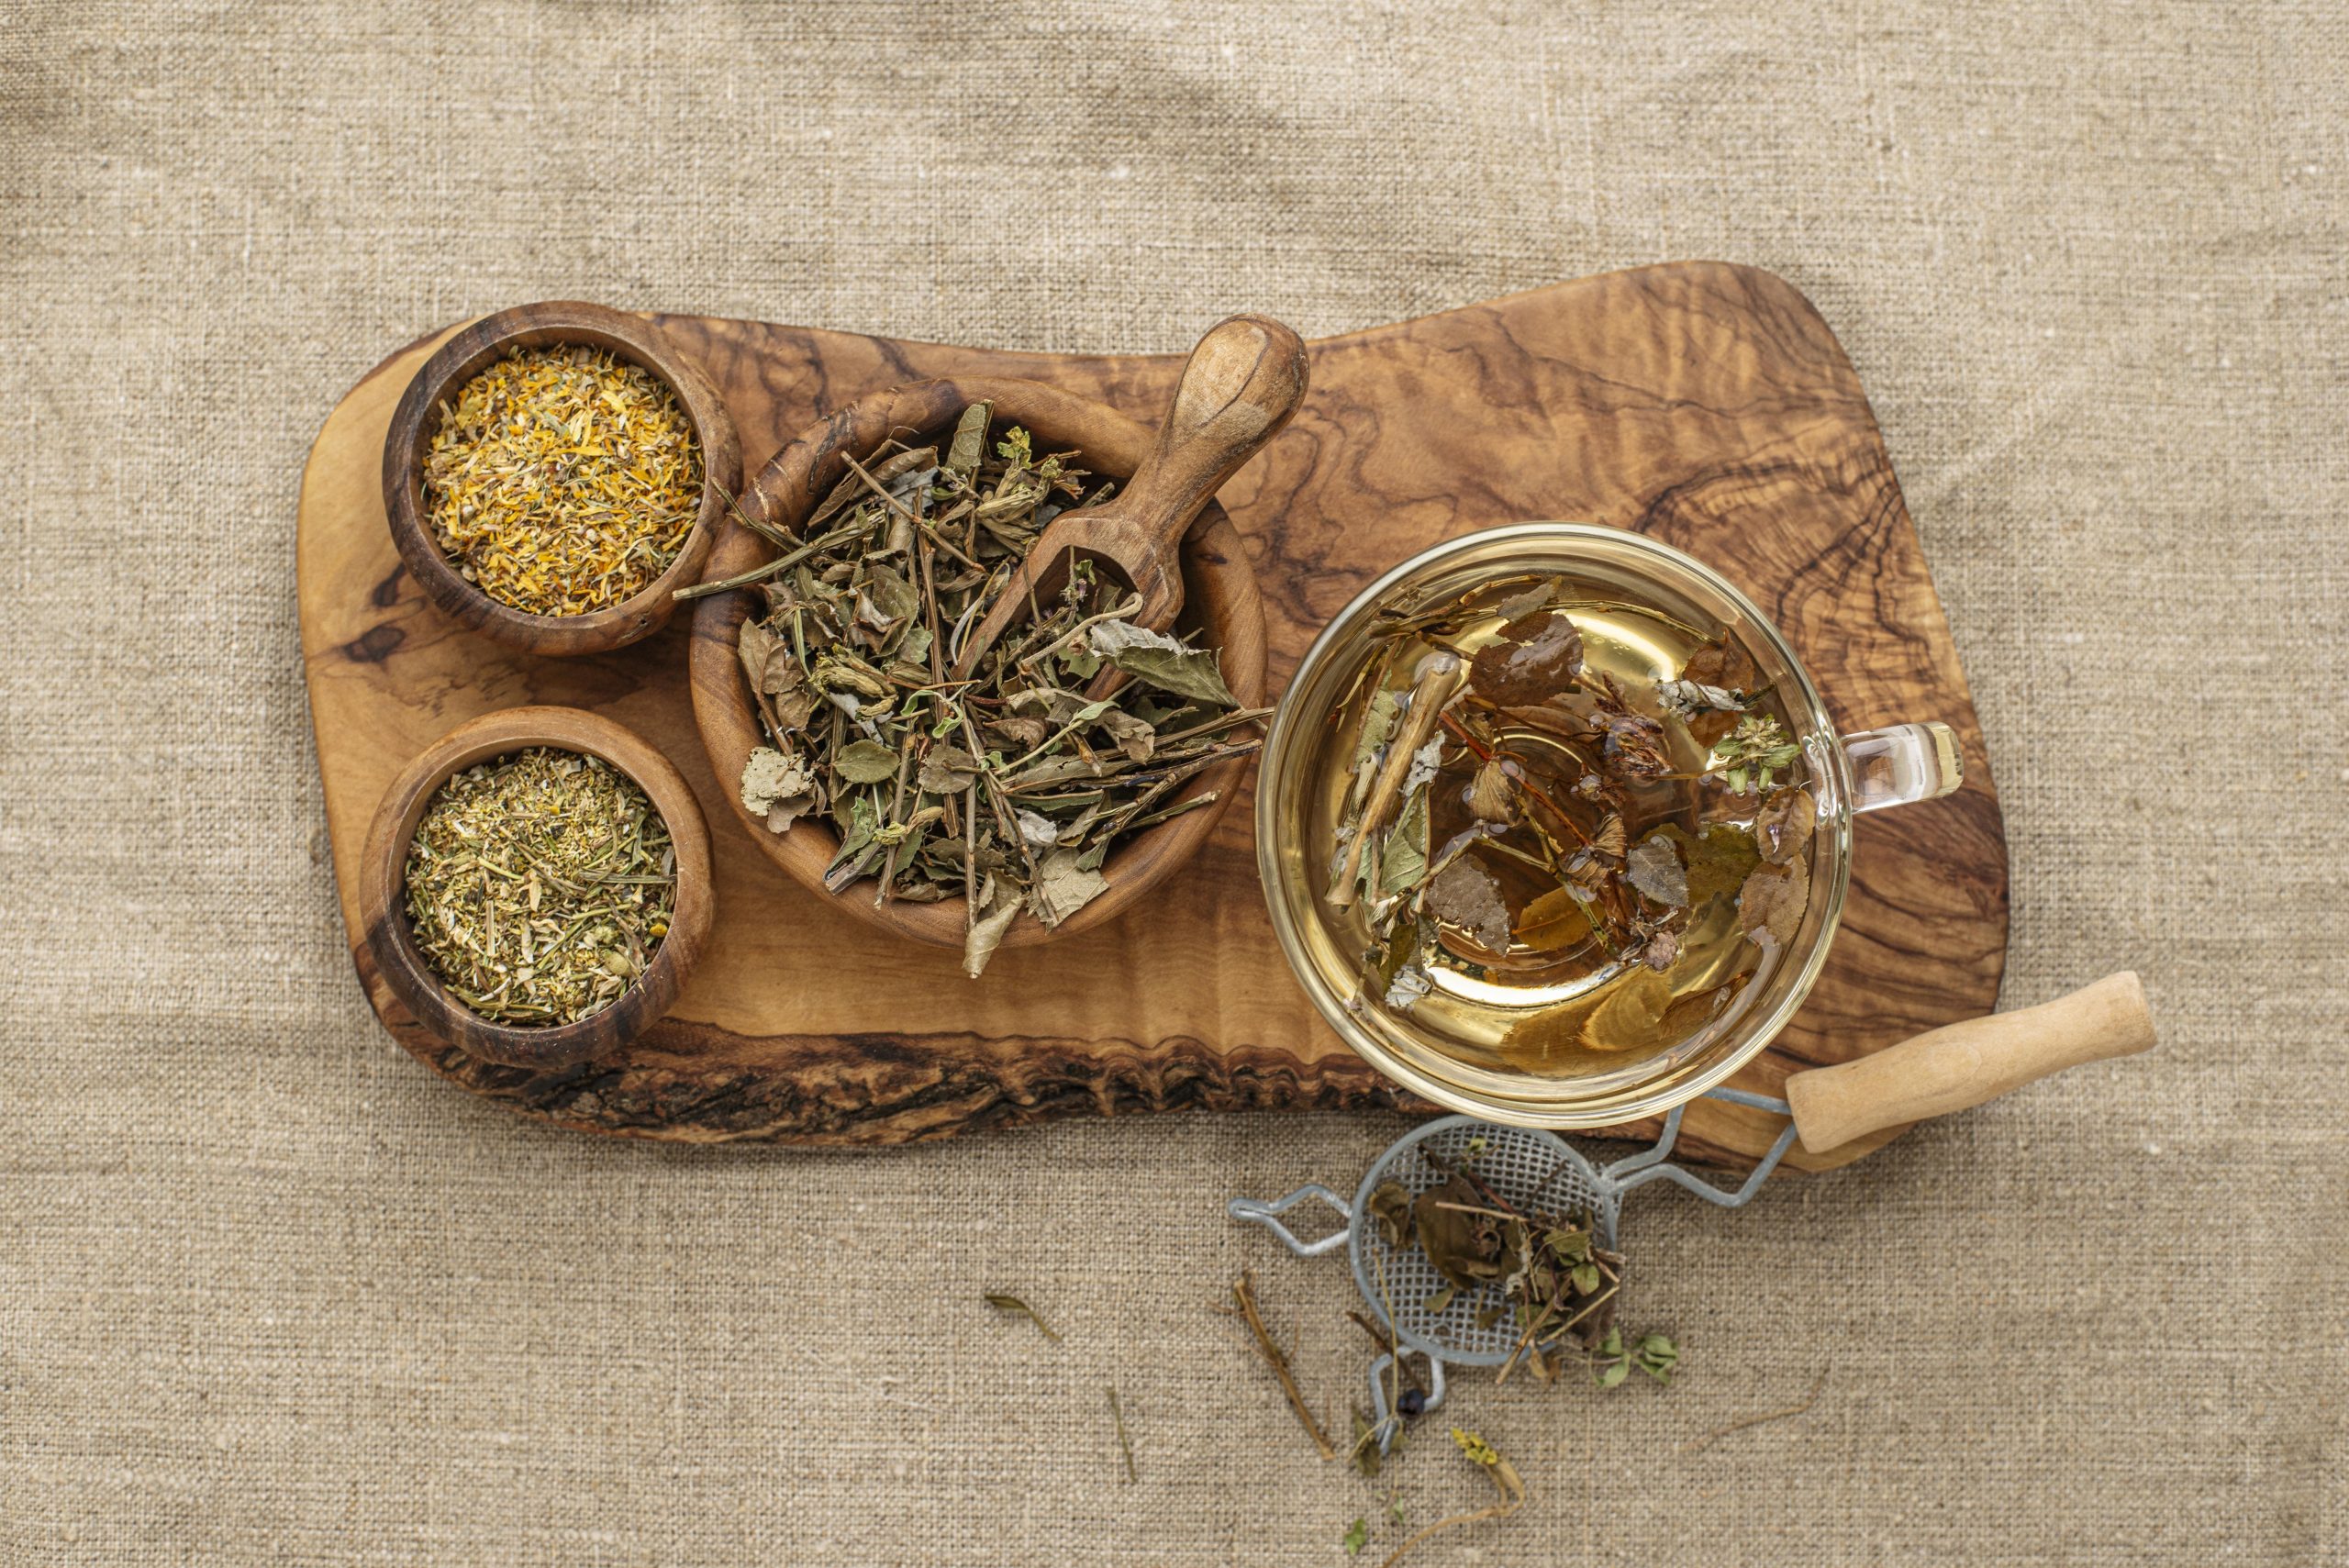 Surtido de plantas secas dispuestas en un plano laico junto a una taza de té, ilustrando la variedad y el uso de hierbas medicinales en la fitoterapia